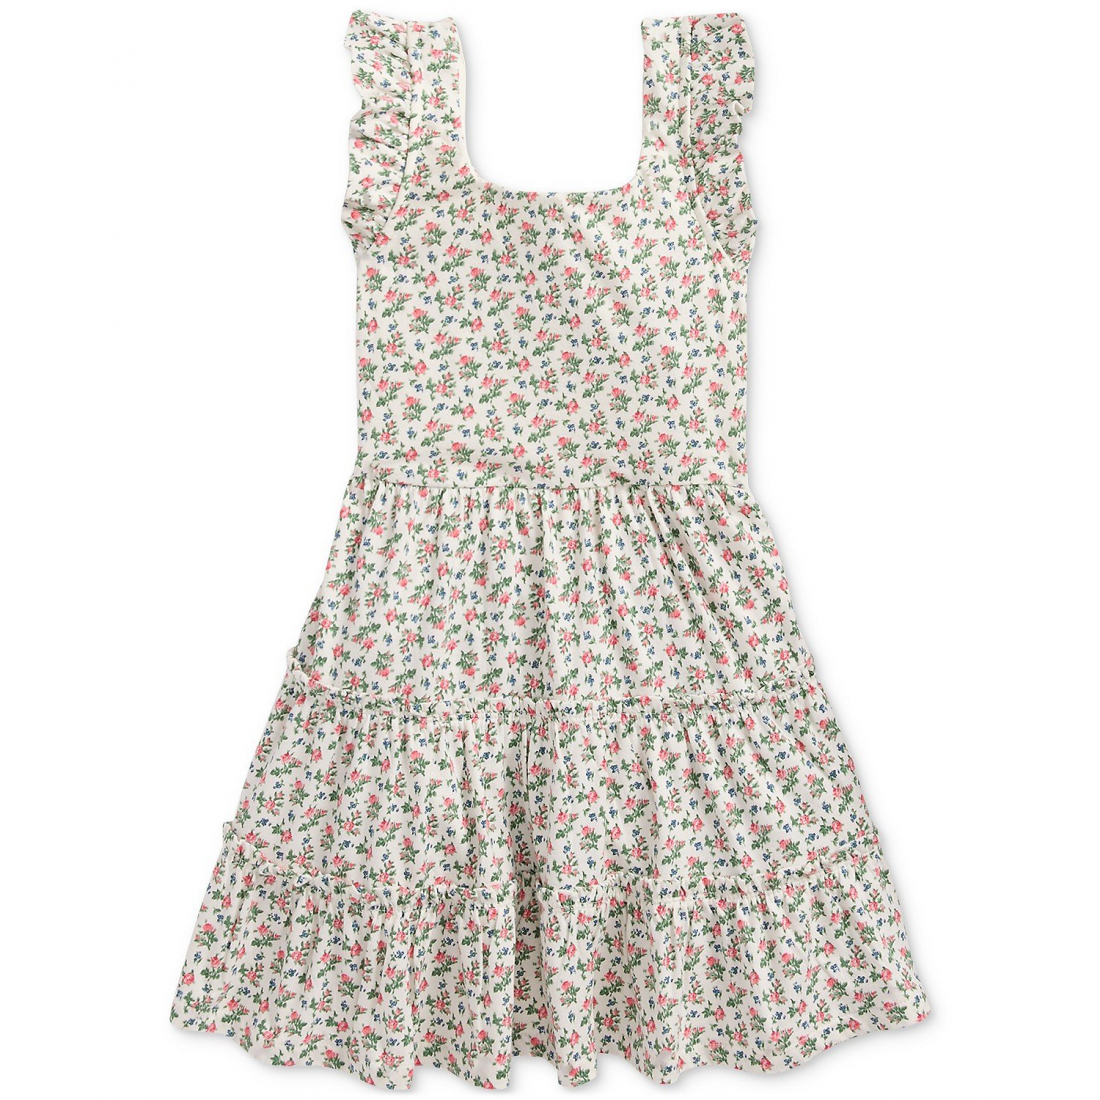 'Floral Ruffled Cotton Jersey' Kleid für kleinkind & kleine Mädchen